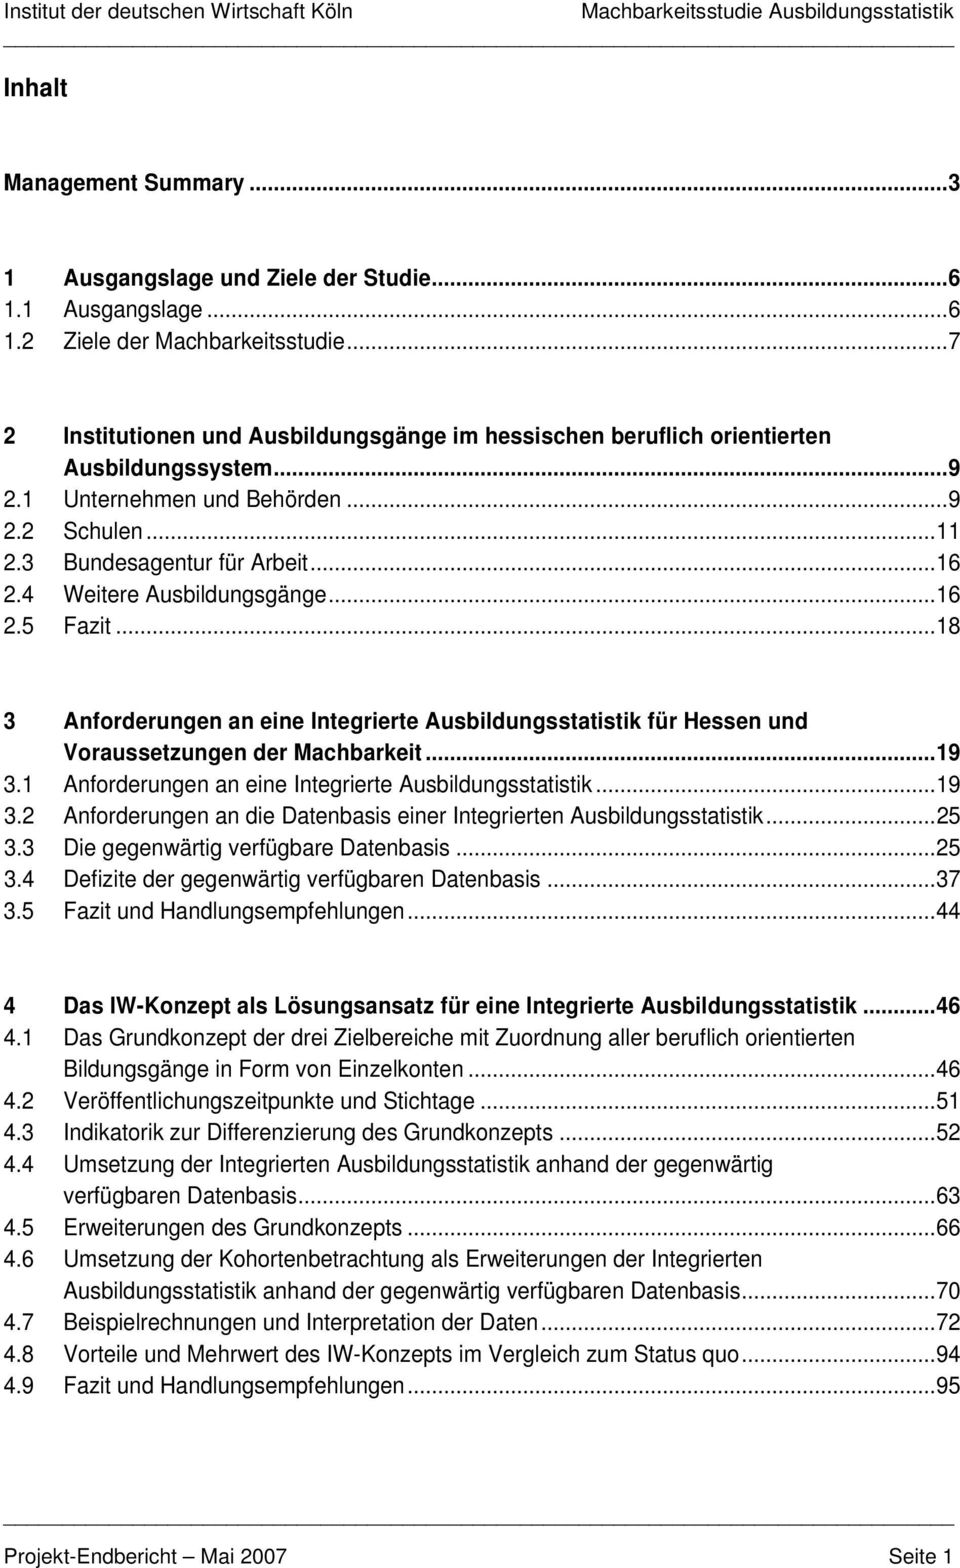 4 Weitere Ausbildungsgänge...16 2.5 Fazit...18 3 Anforderungen an eine Integrierte Ausbildungsstatistik für Hessen und Voraussetzungen der Machbarkeit...19 3.